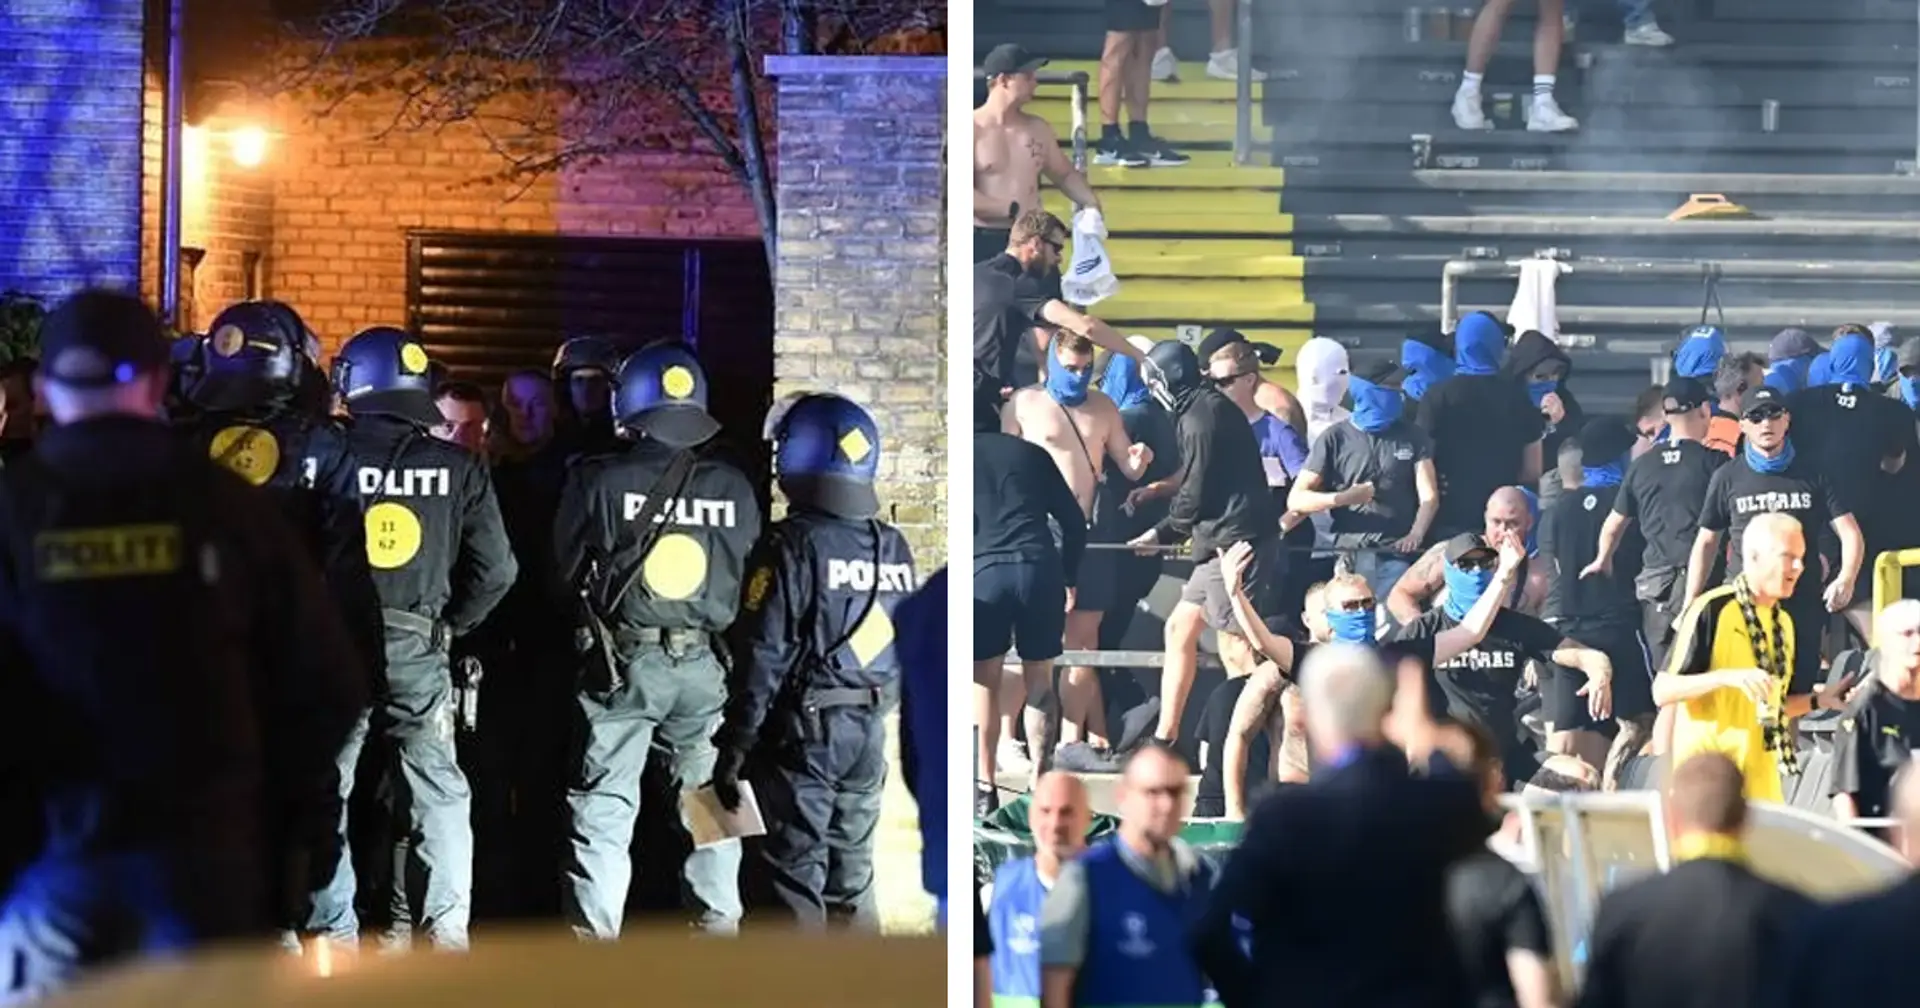 Schlägereien fanden doch statt! In Dänemark berichtet man von Zusammenstößen zwischen Dortmunder- und Kopenhagen-Fans